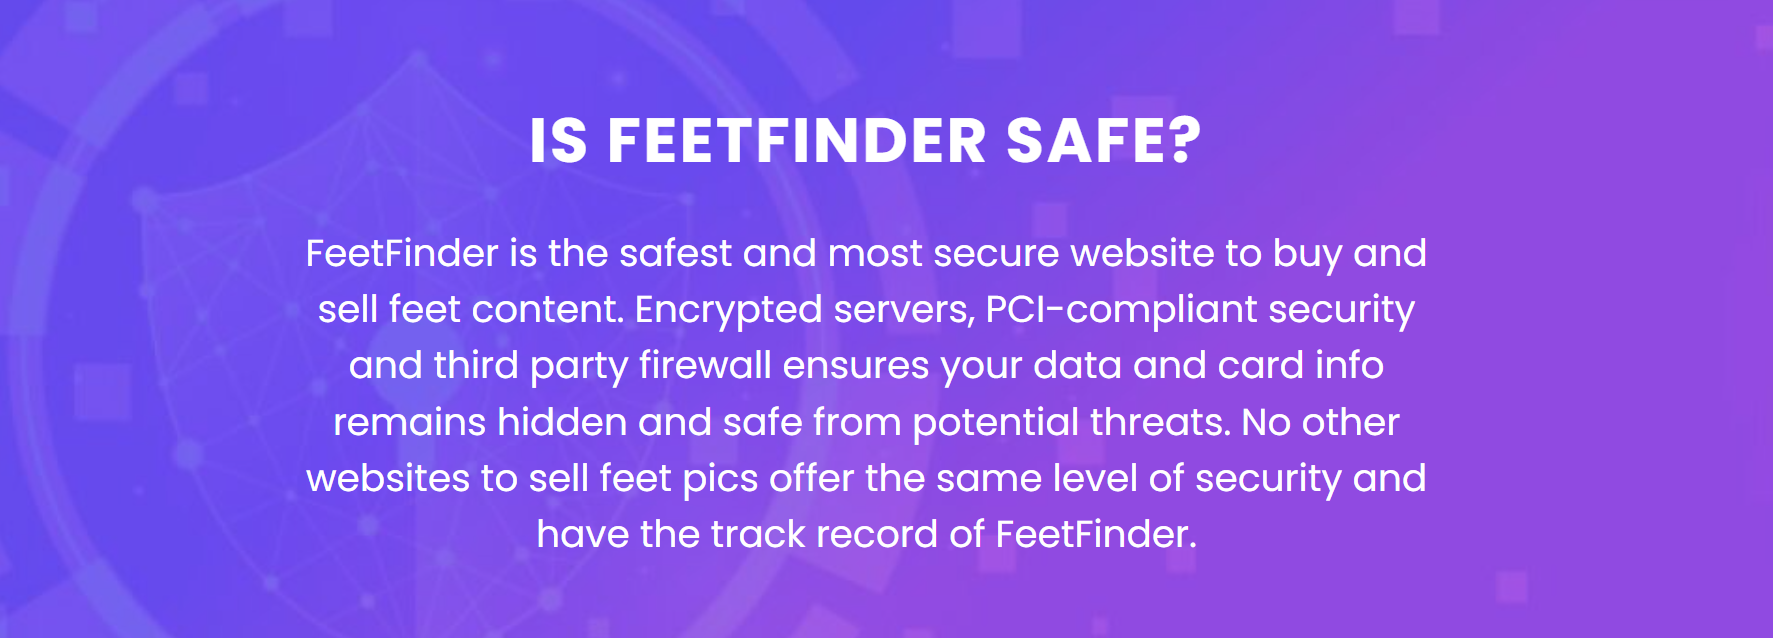 Is FeetFinder Safe?